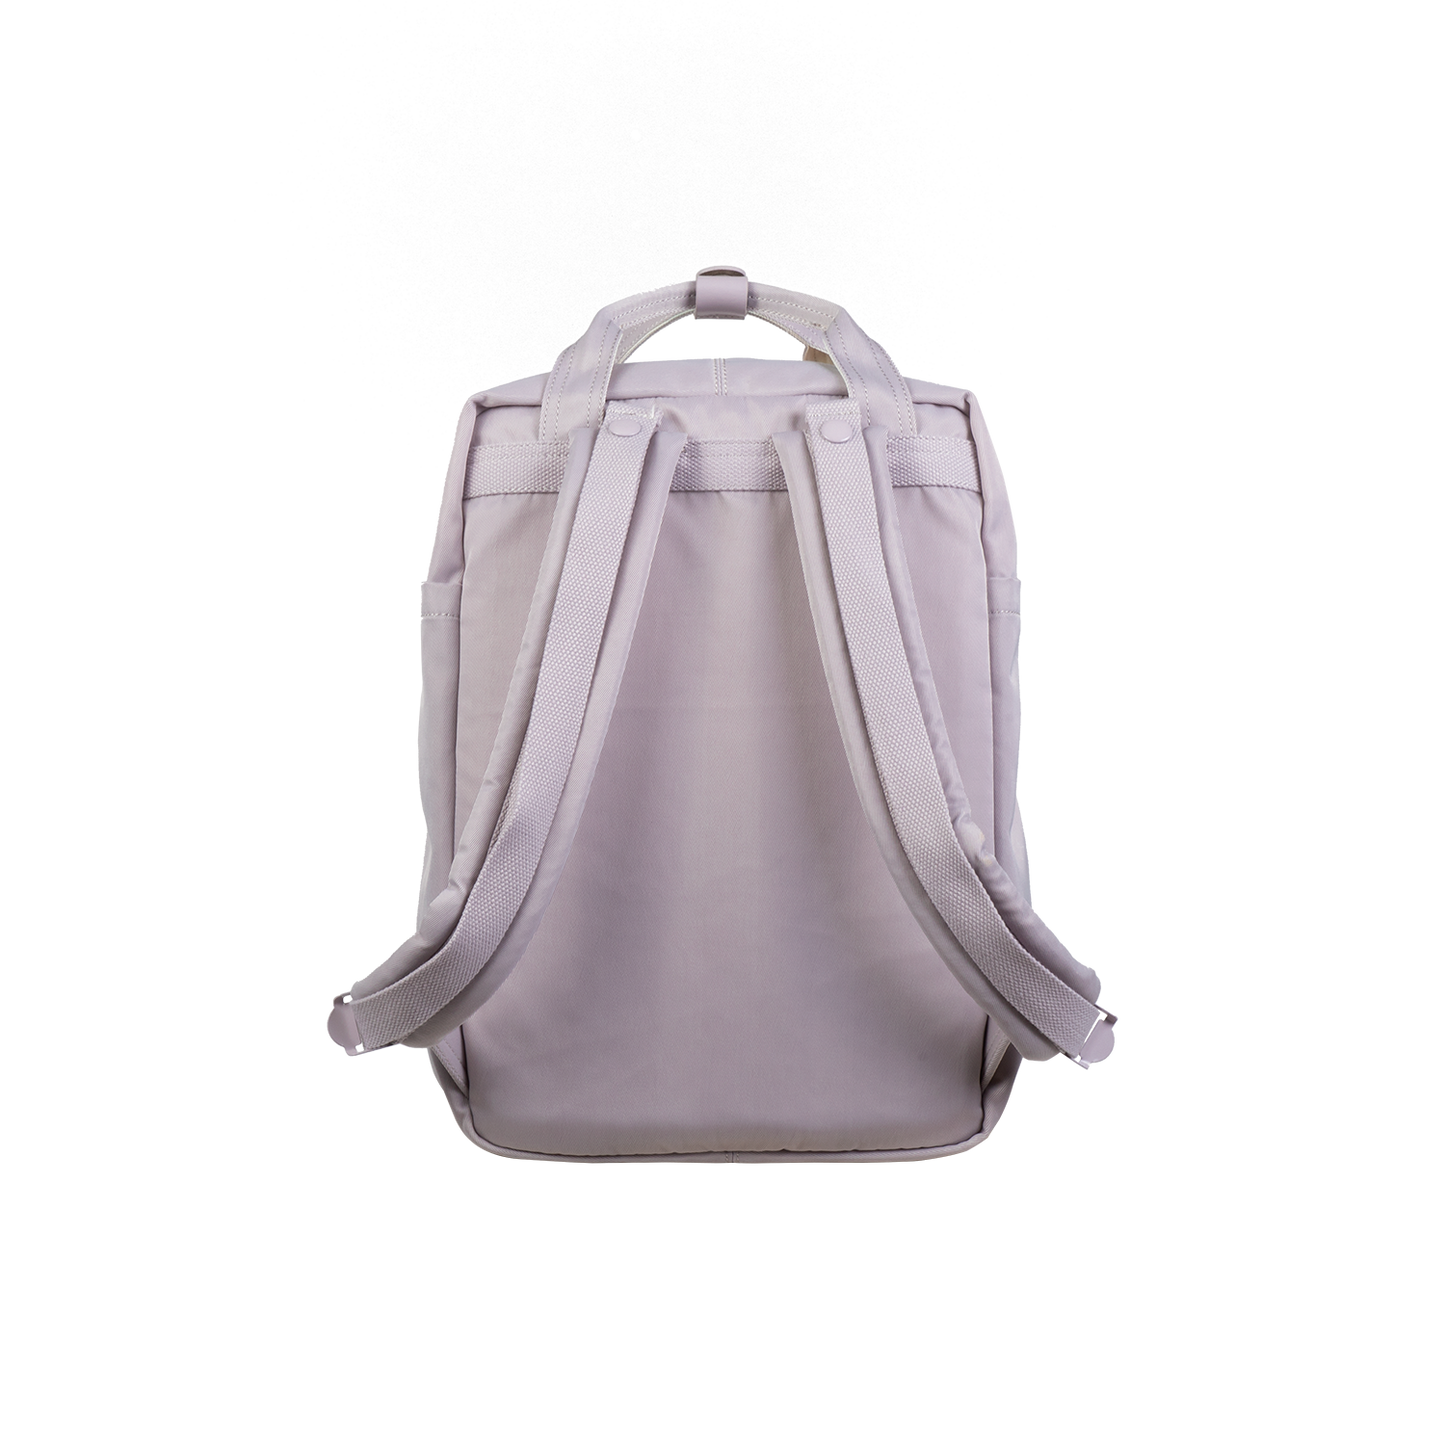 Macaroon Unicorn Dream Series Backpack